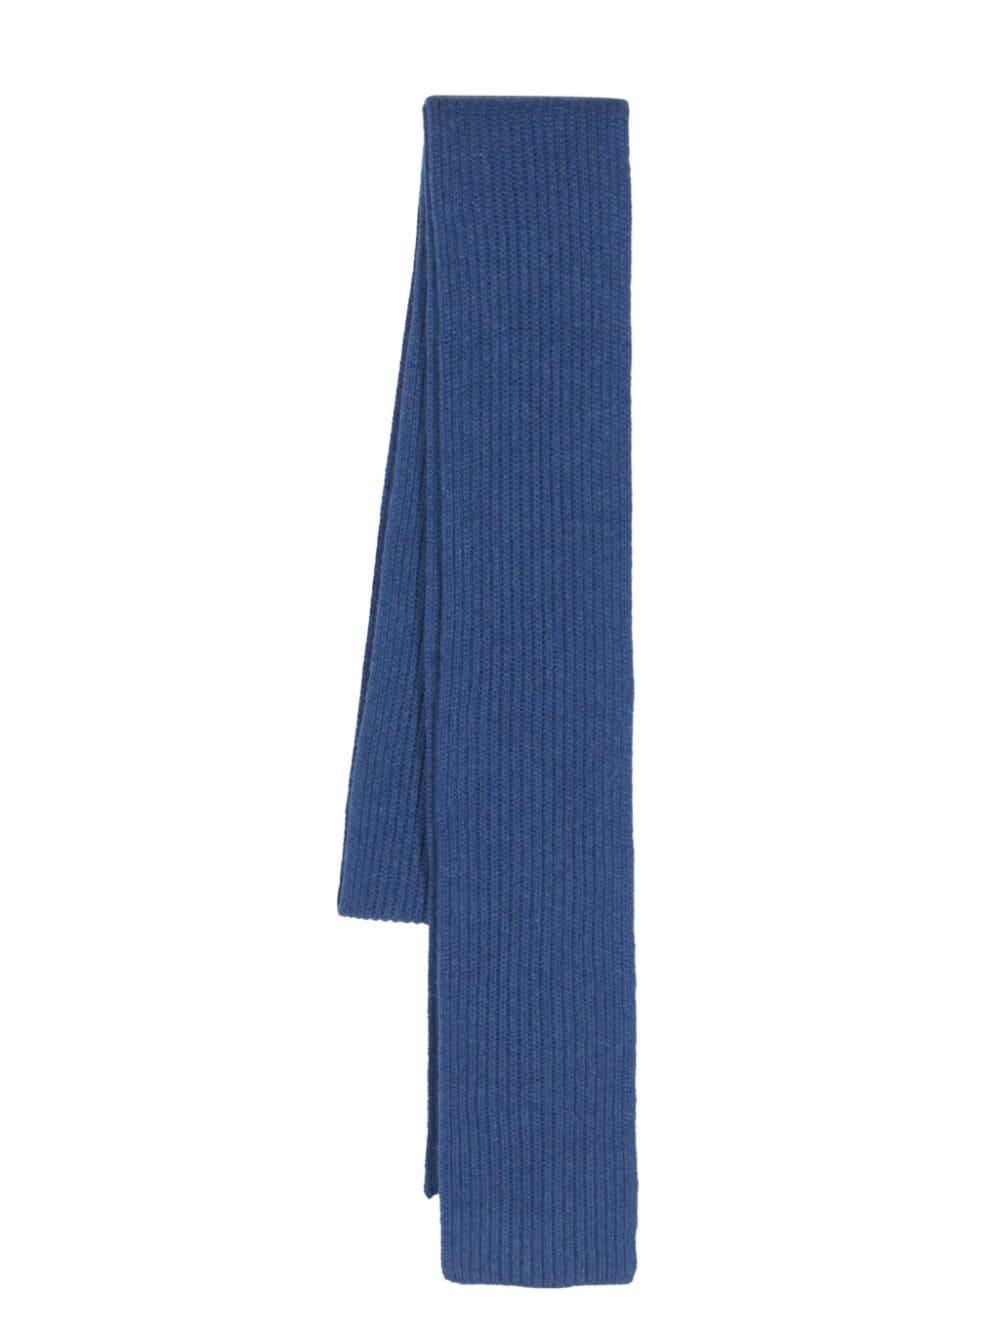 Ganni Ribbed Knit Scarf in Blue | Lyst Canada